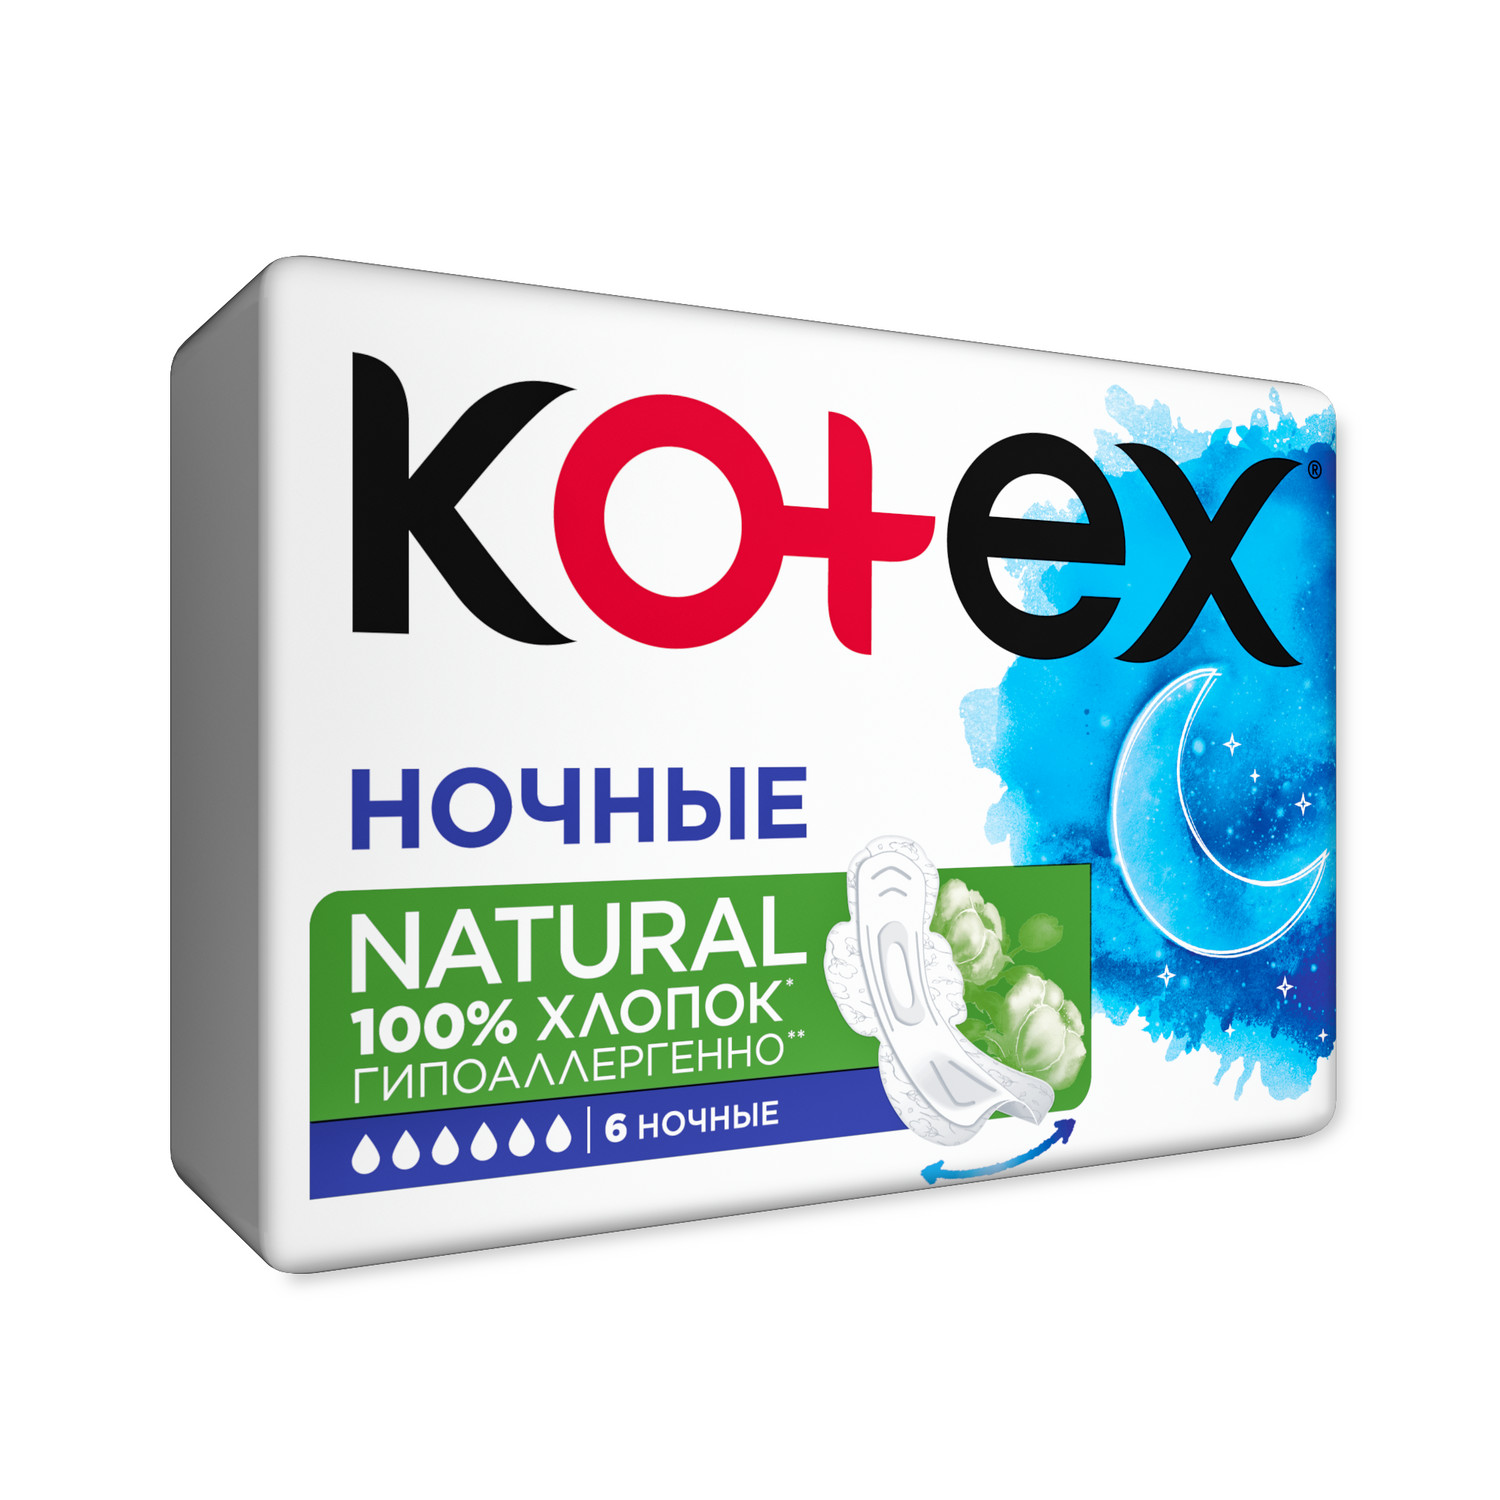 Прокладки KOTEX Natural ночные 6шт - фото 4